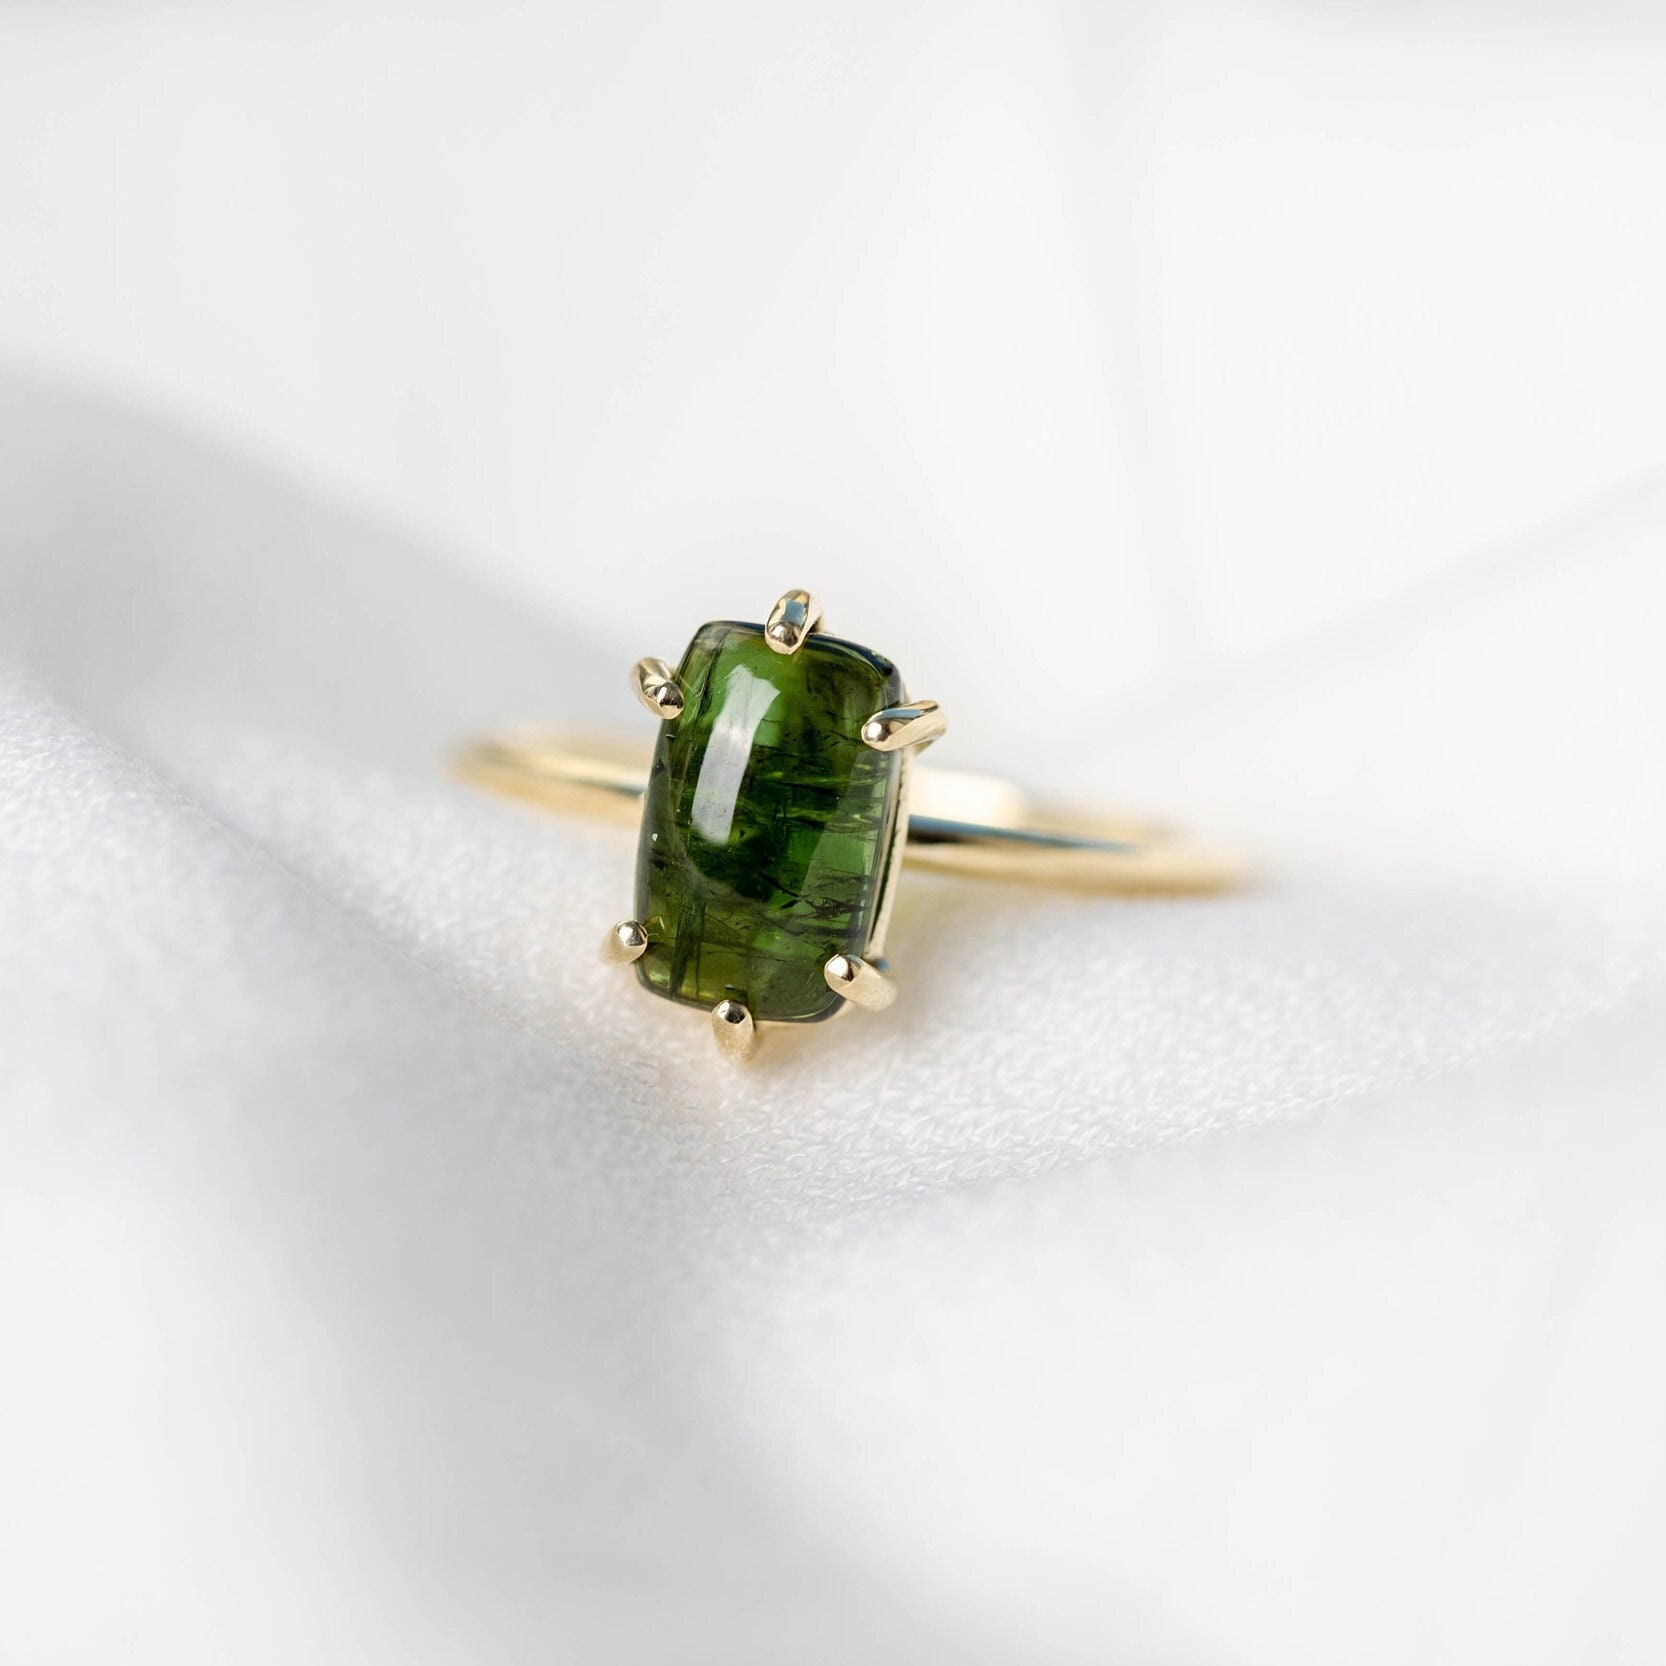 Natürlicher Grüner Turmalin-Ring Aus 14-Karätigem Gold Für Damen, Statement-Verlobungs-Solitärring - Edelstein-Ring Gr00065 von KyklosJewelry